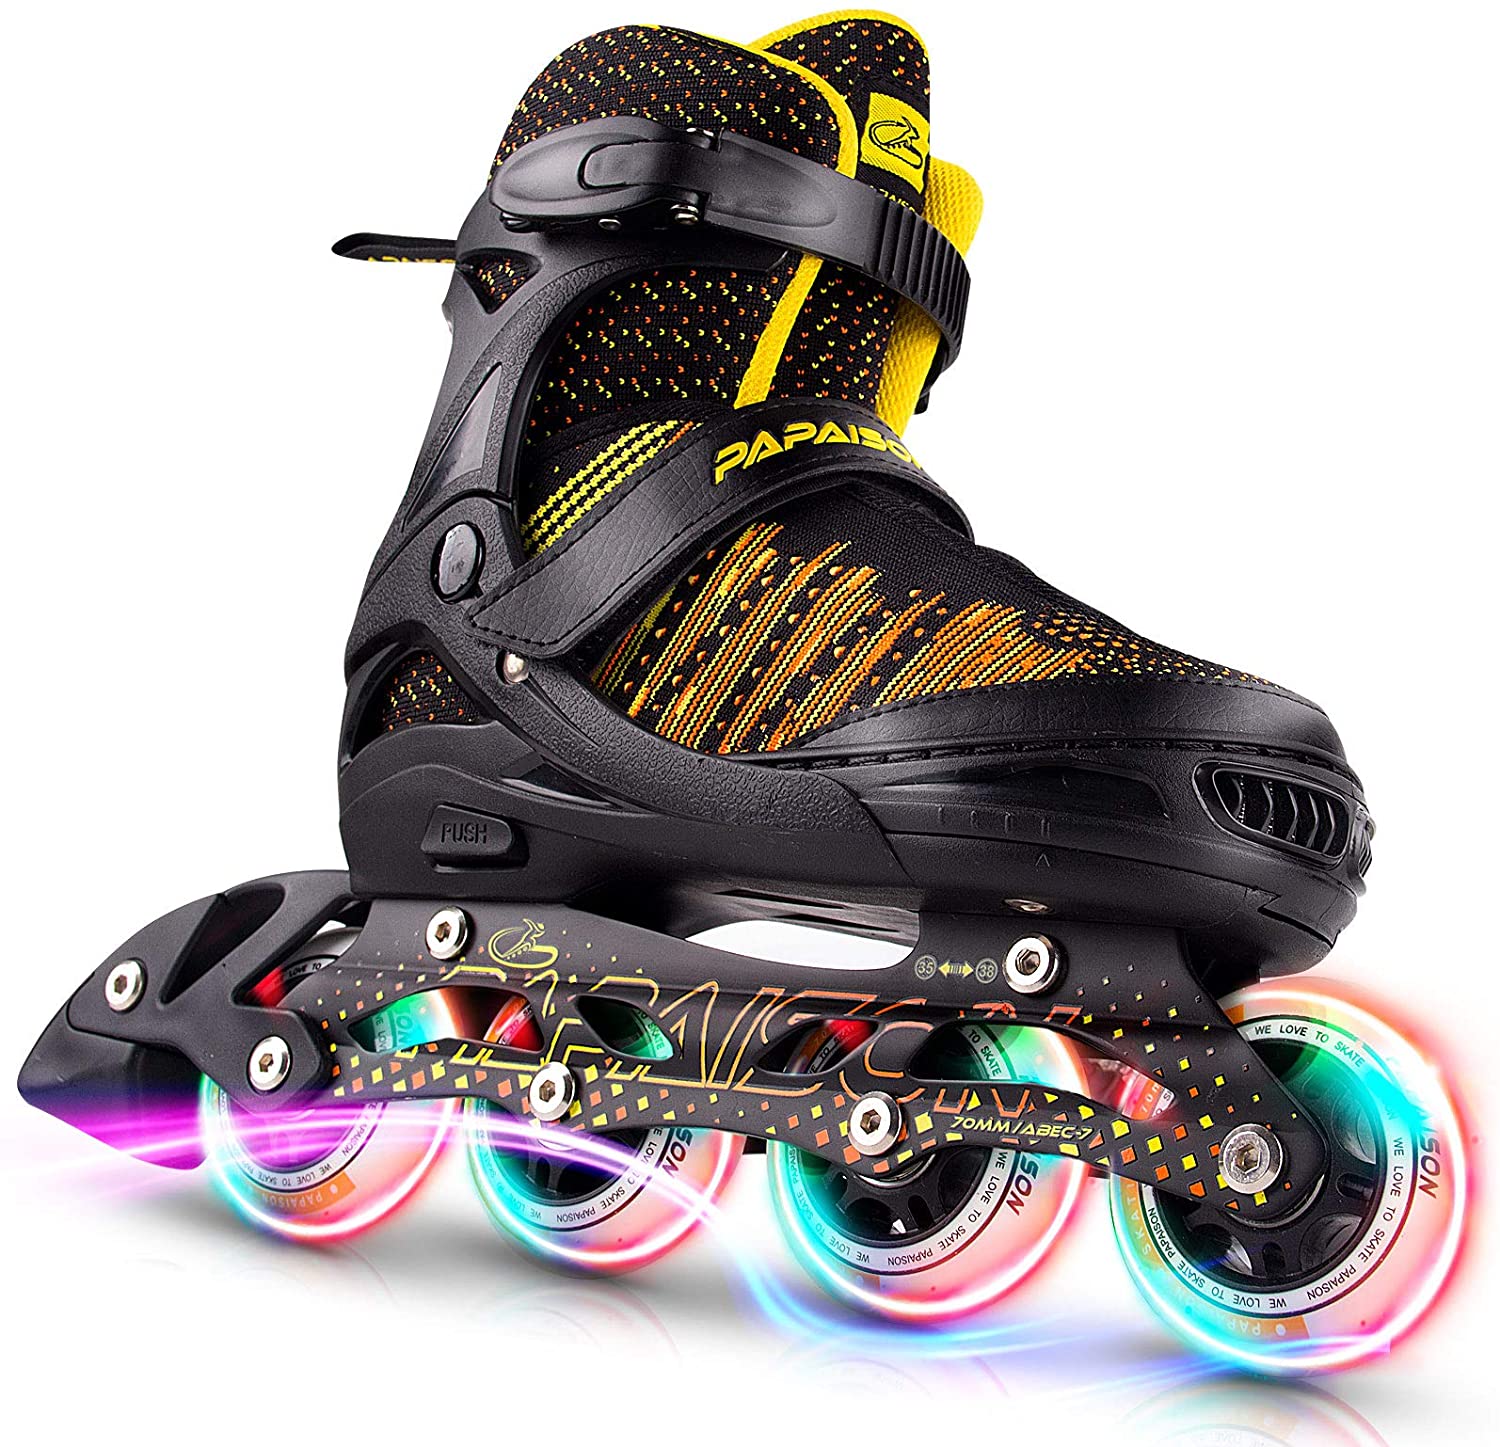 Papaison Roller Skate 8 Wheels Light Up Flyknitting - Black S